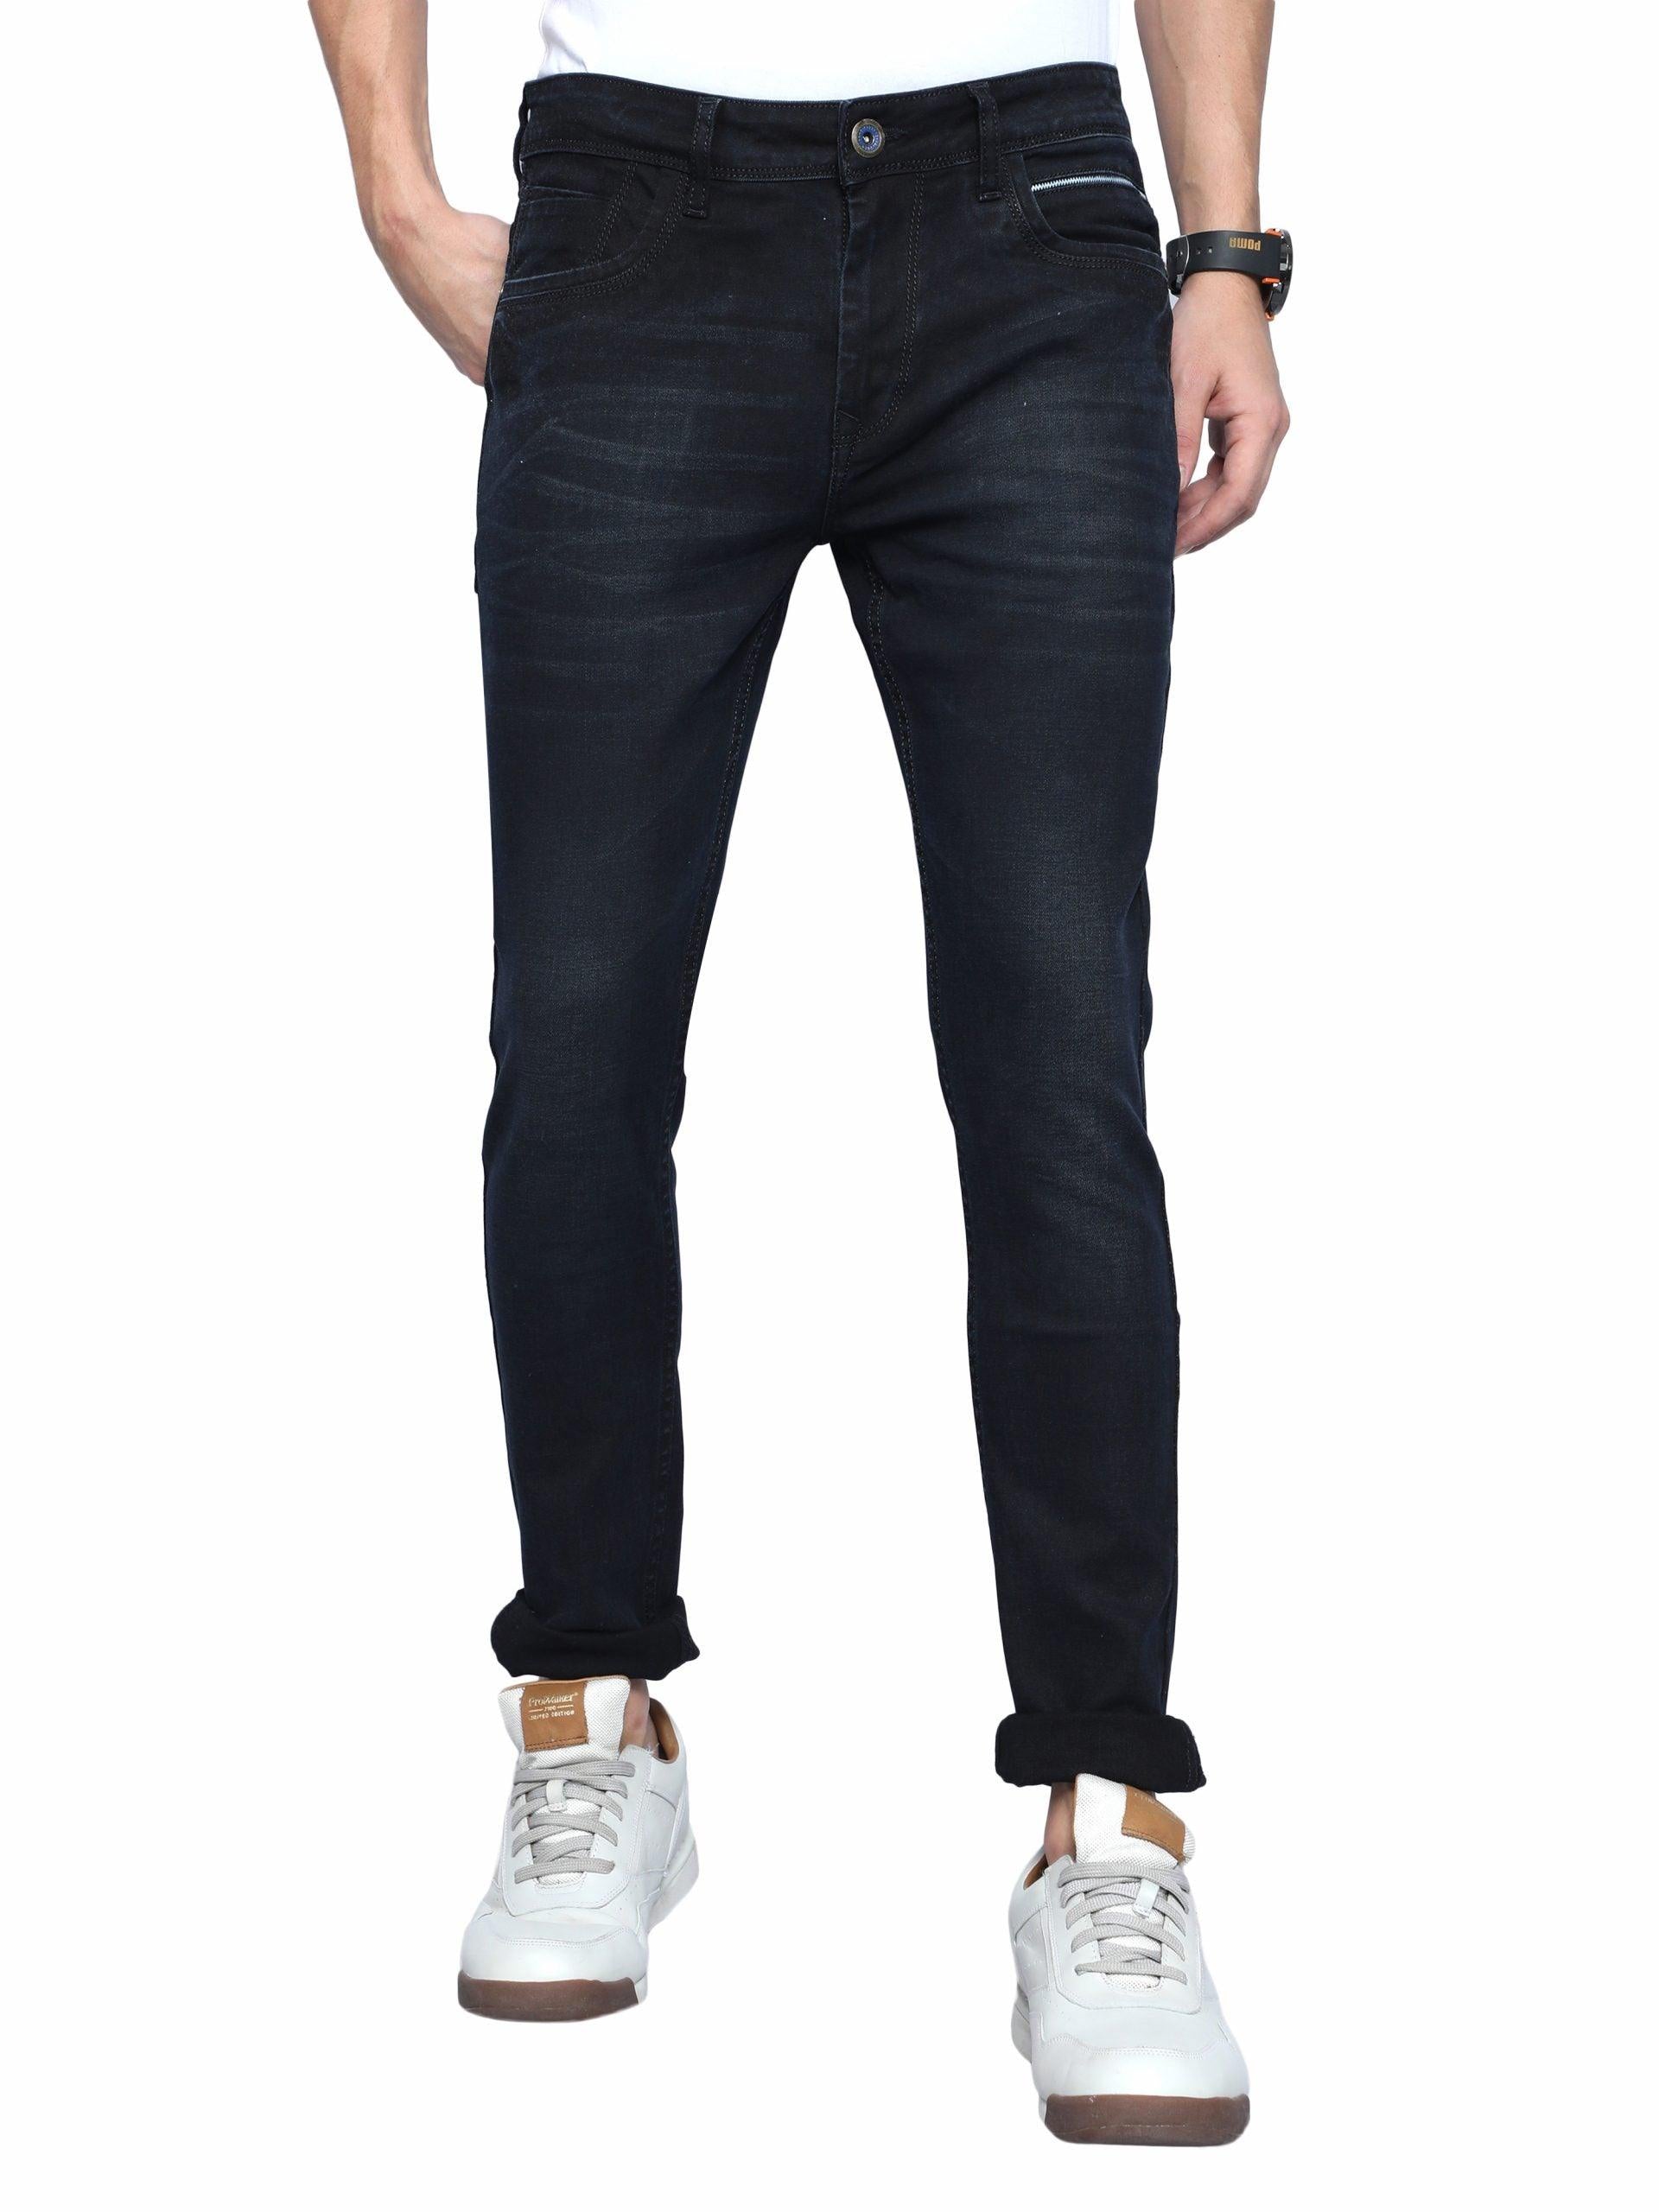 Men's Skinny Fit Jeans - Black - Triggerjeans